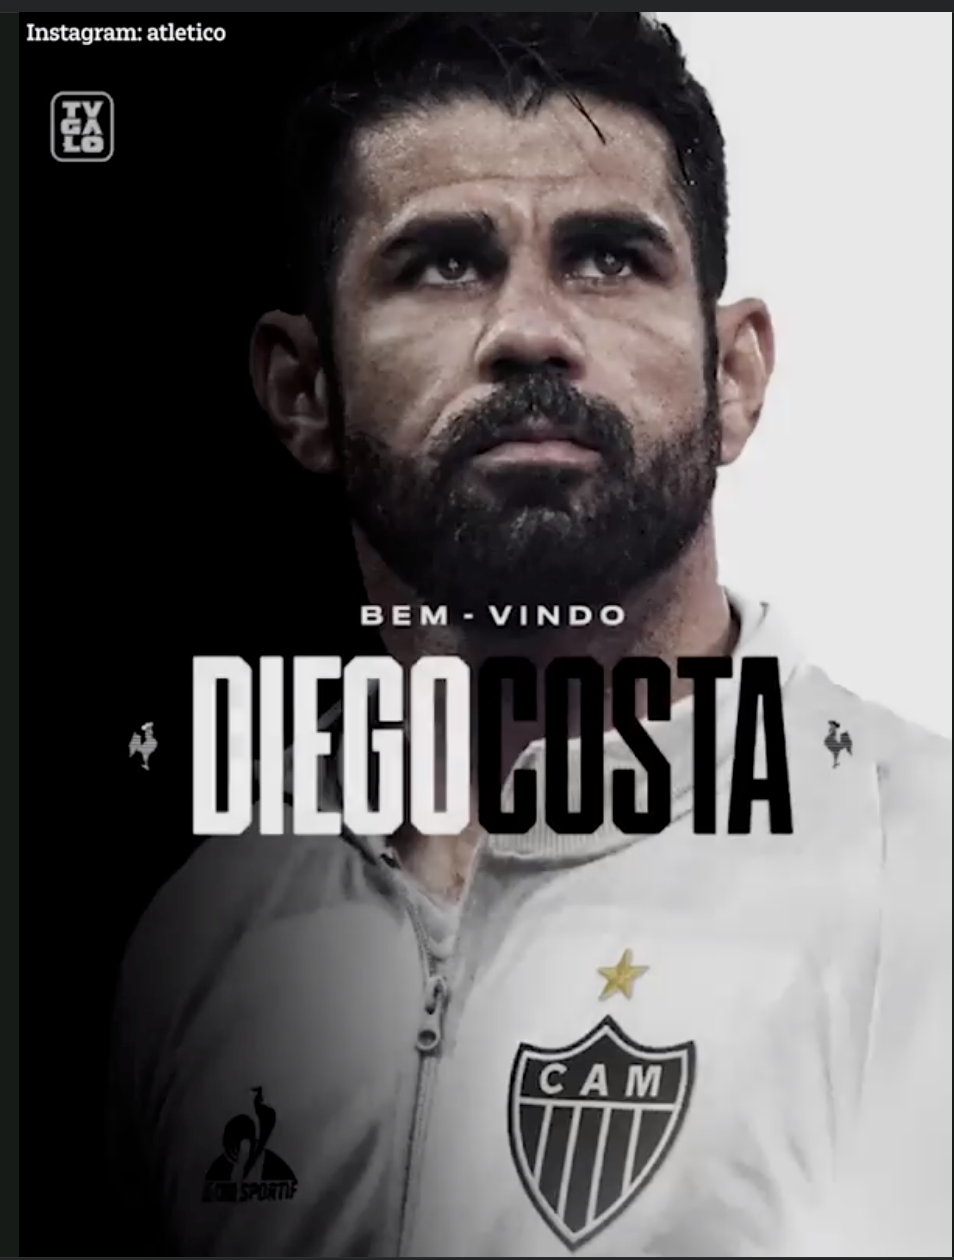 Cựu sao Chelsea Diego Costa vướng nghi án cá độ bóng đá, rửa tiền - Ảnh 3.